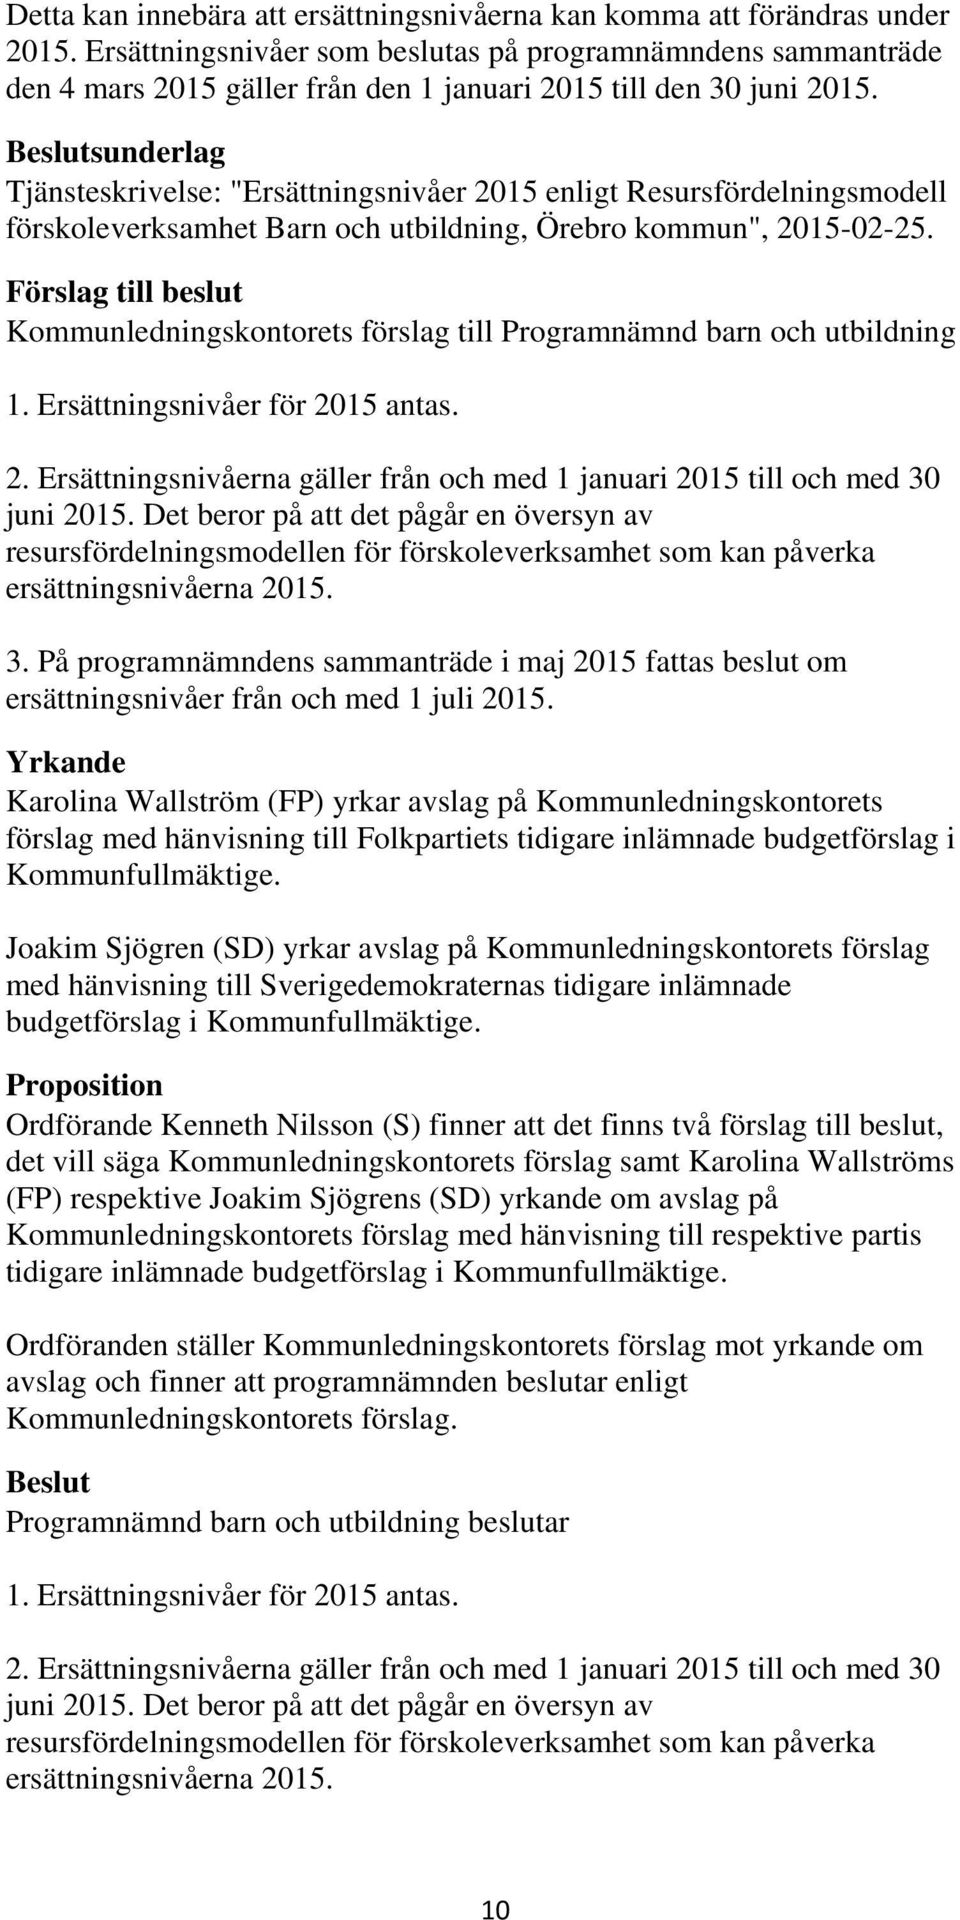 Beslutsunderlag Tjänsteskrivelse: "Ersättningsnivåer 2015 enligt Resursfördelningsmodell förskoleverksamhet Barn och utbildning, Örebro kommun", 2015-02-25.